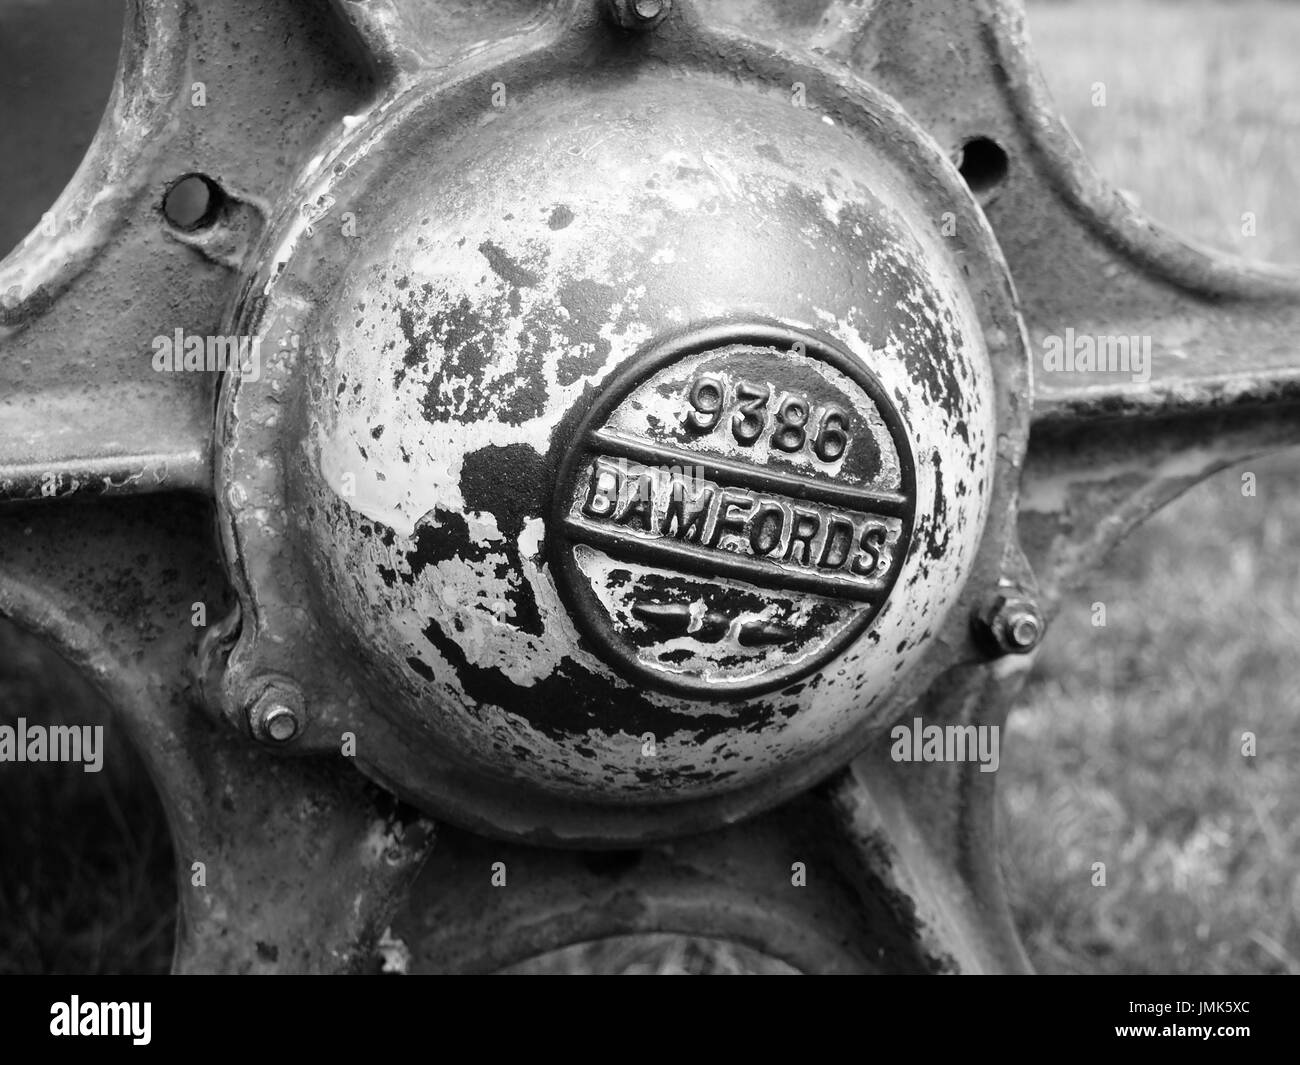 Il mozzo ruota dal braccio abbandonati macchinari, loweswater, cumbria Foto Stock